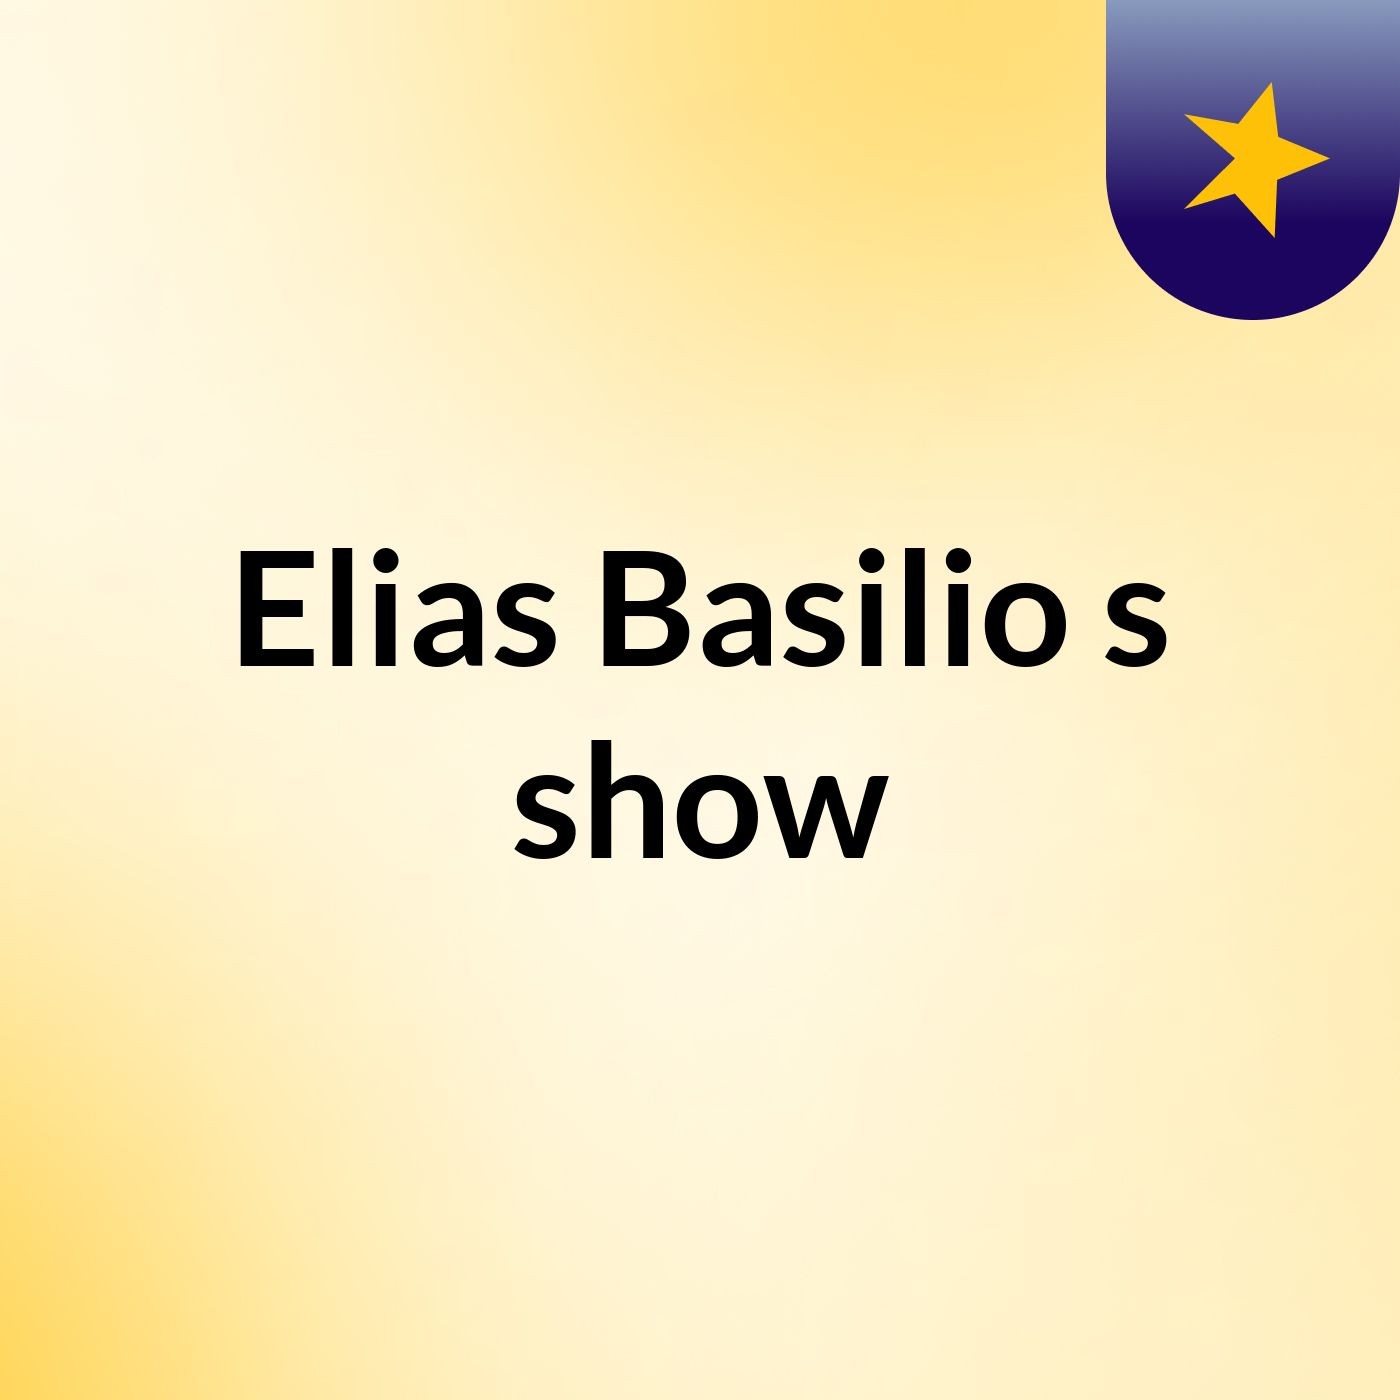 Elias Basilio's show